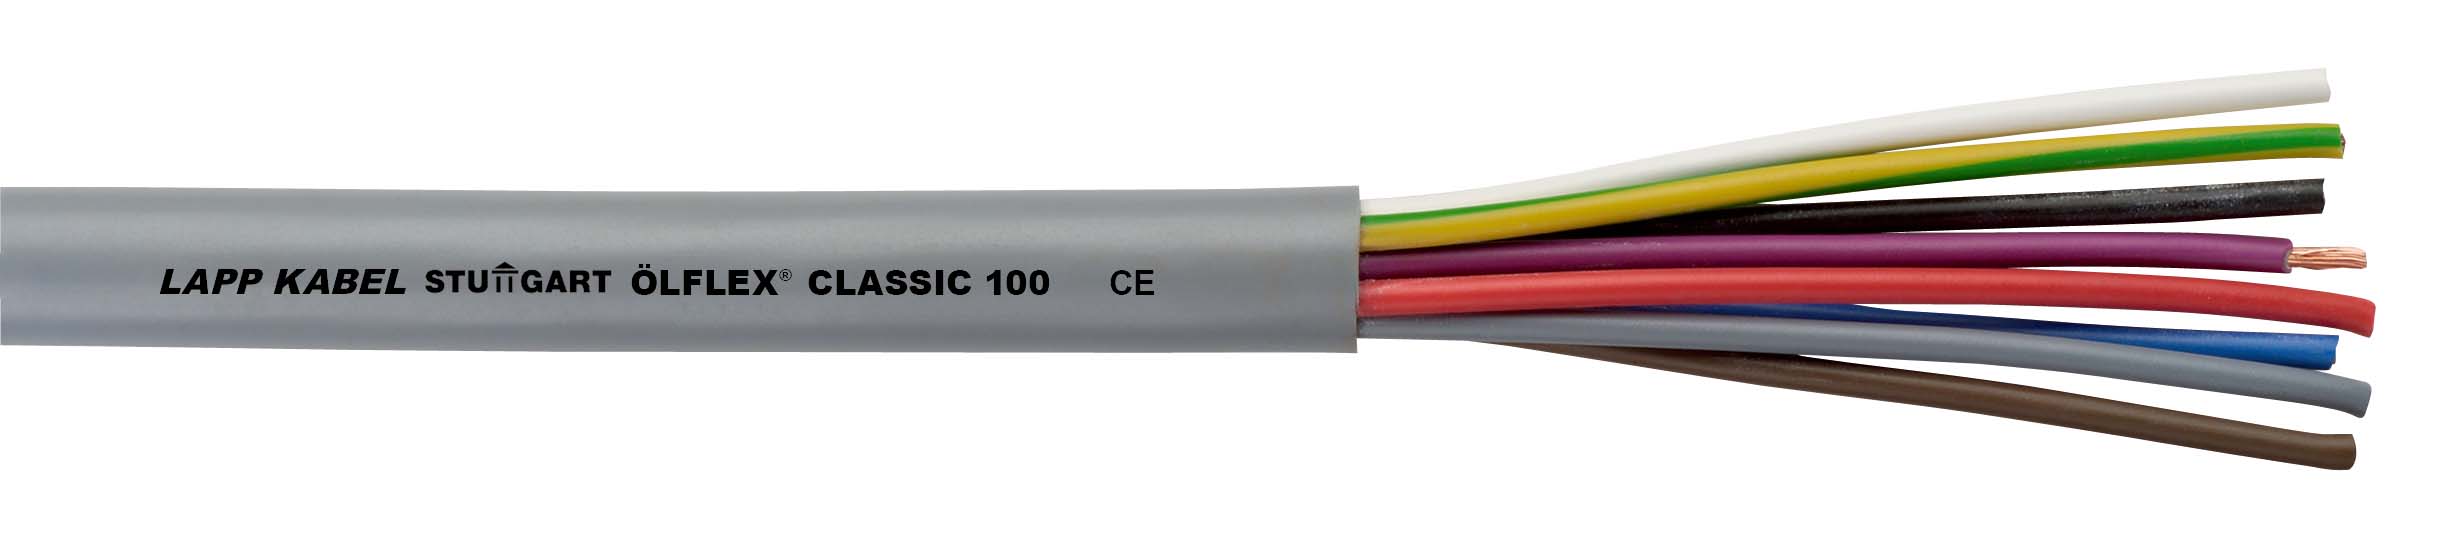 500 M Lapp Kabel&Leitung ÖLFLEX CLASSIC 100 450/750V 5G6 00101073/500